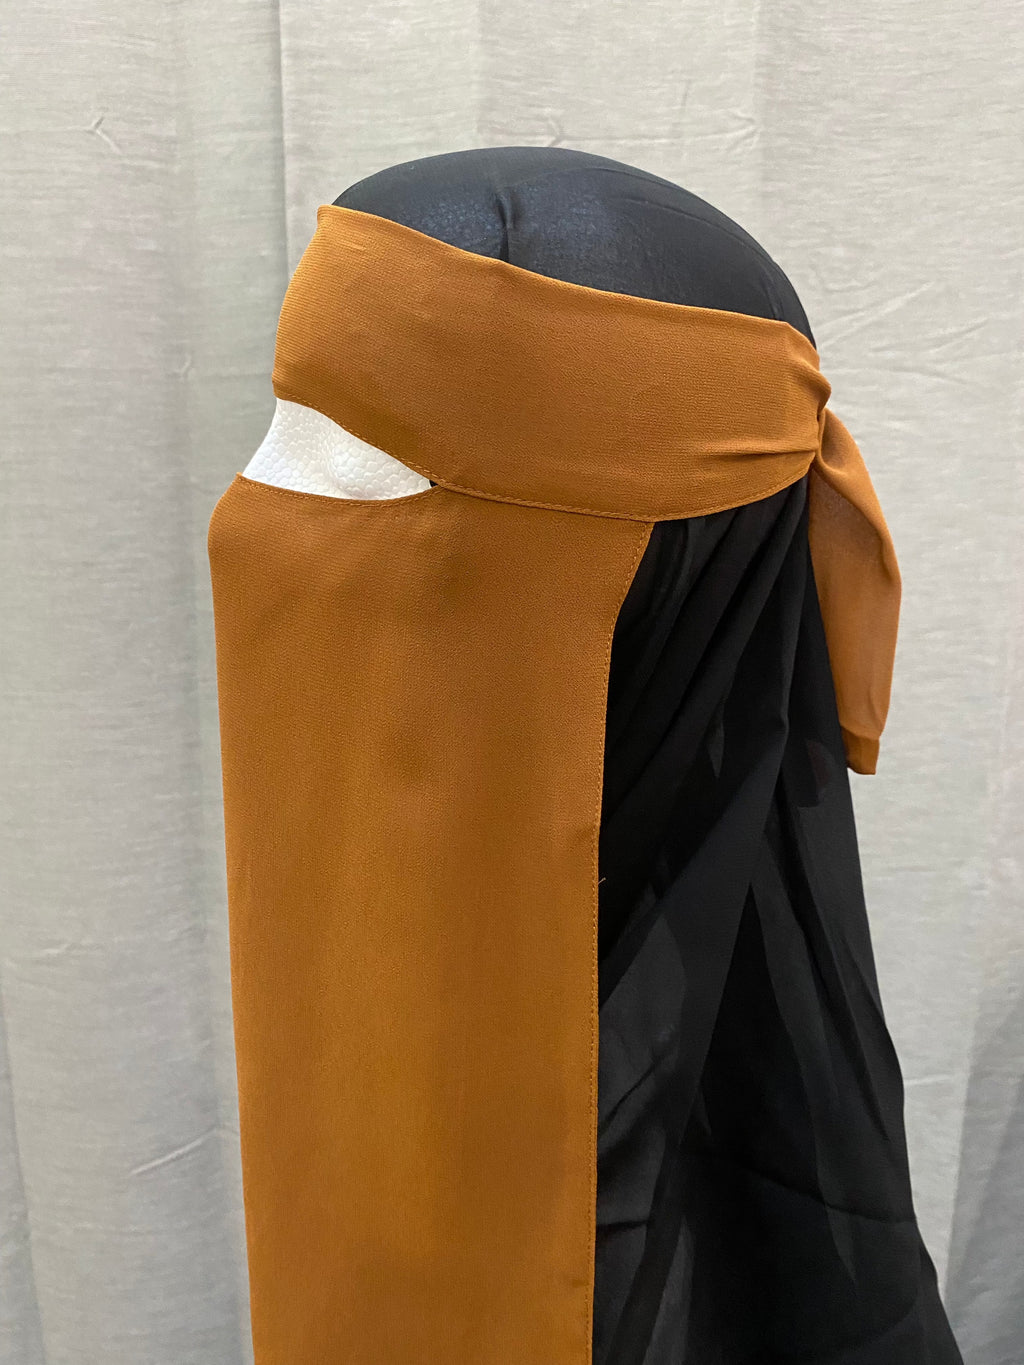 veil-and-virtue-single-layer-niqab-cinnamon